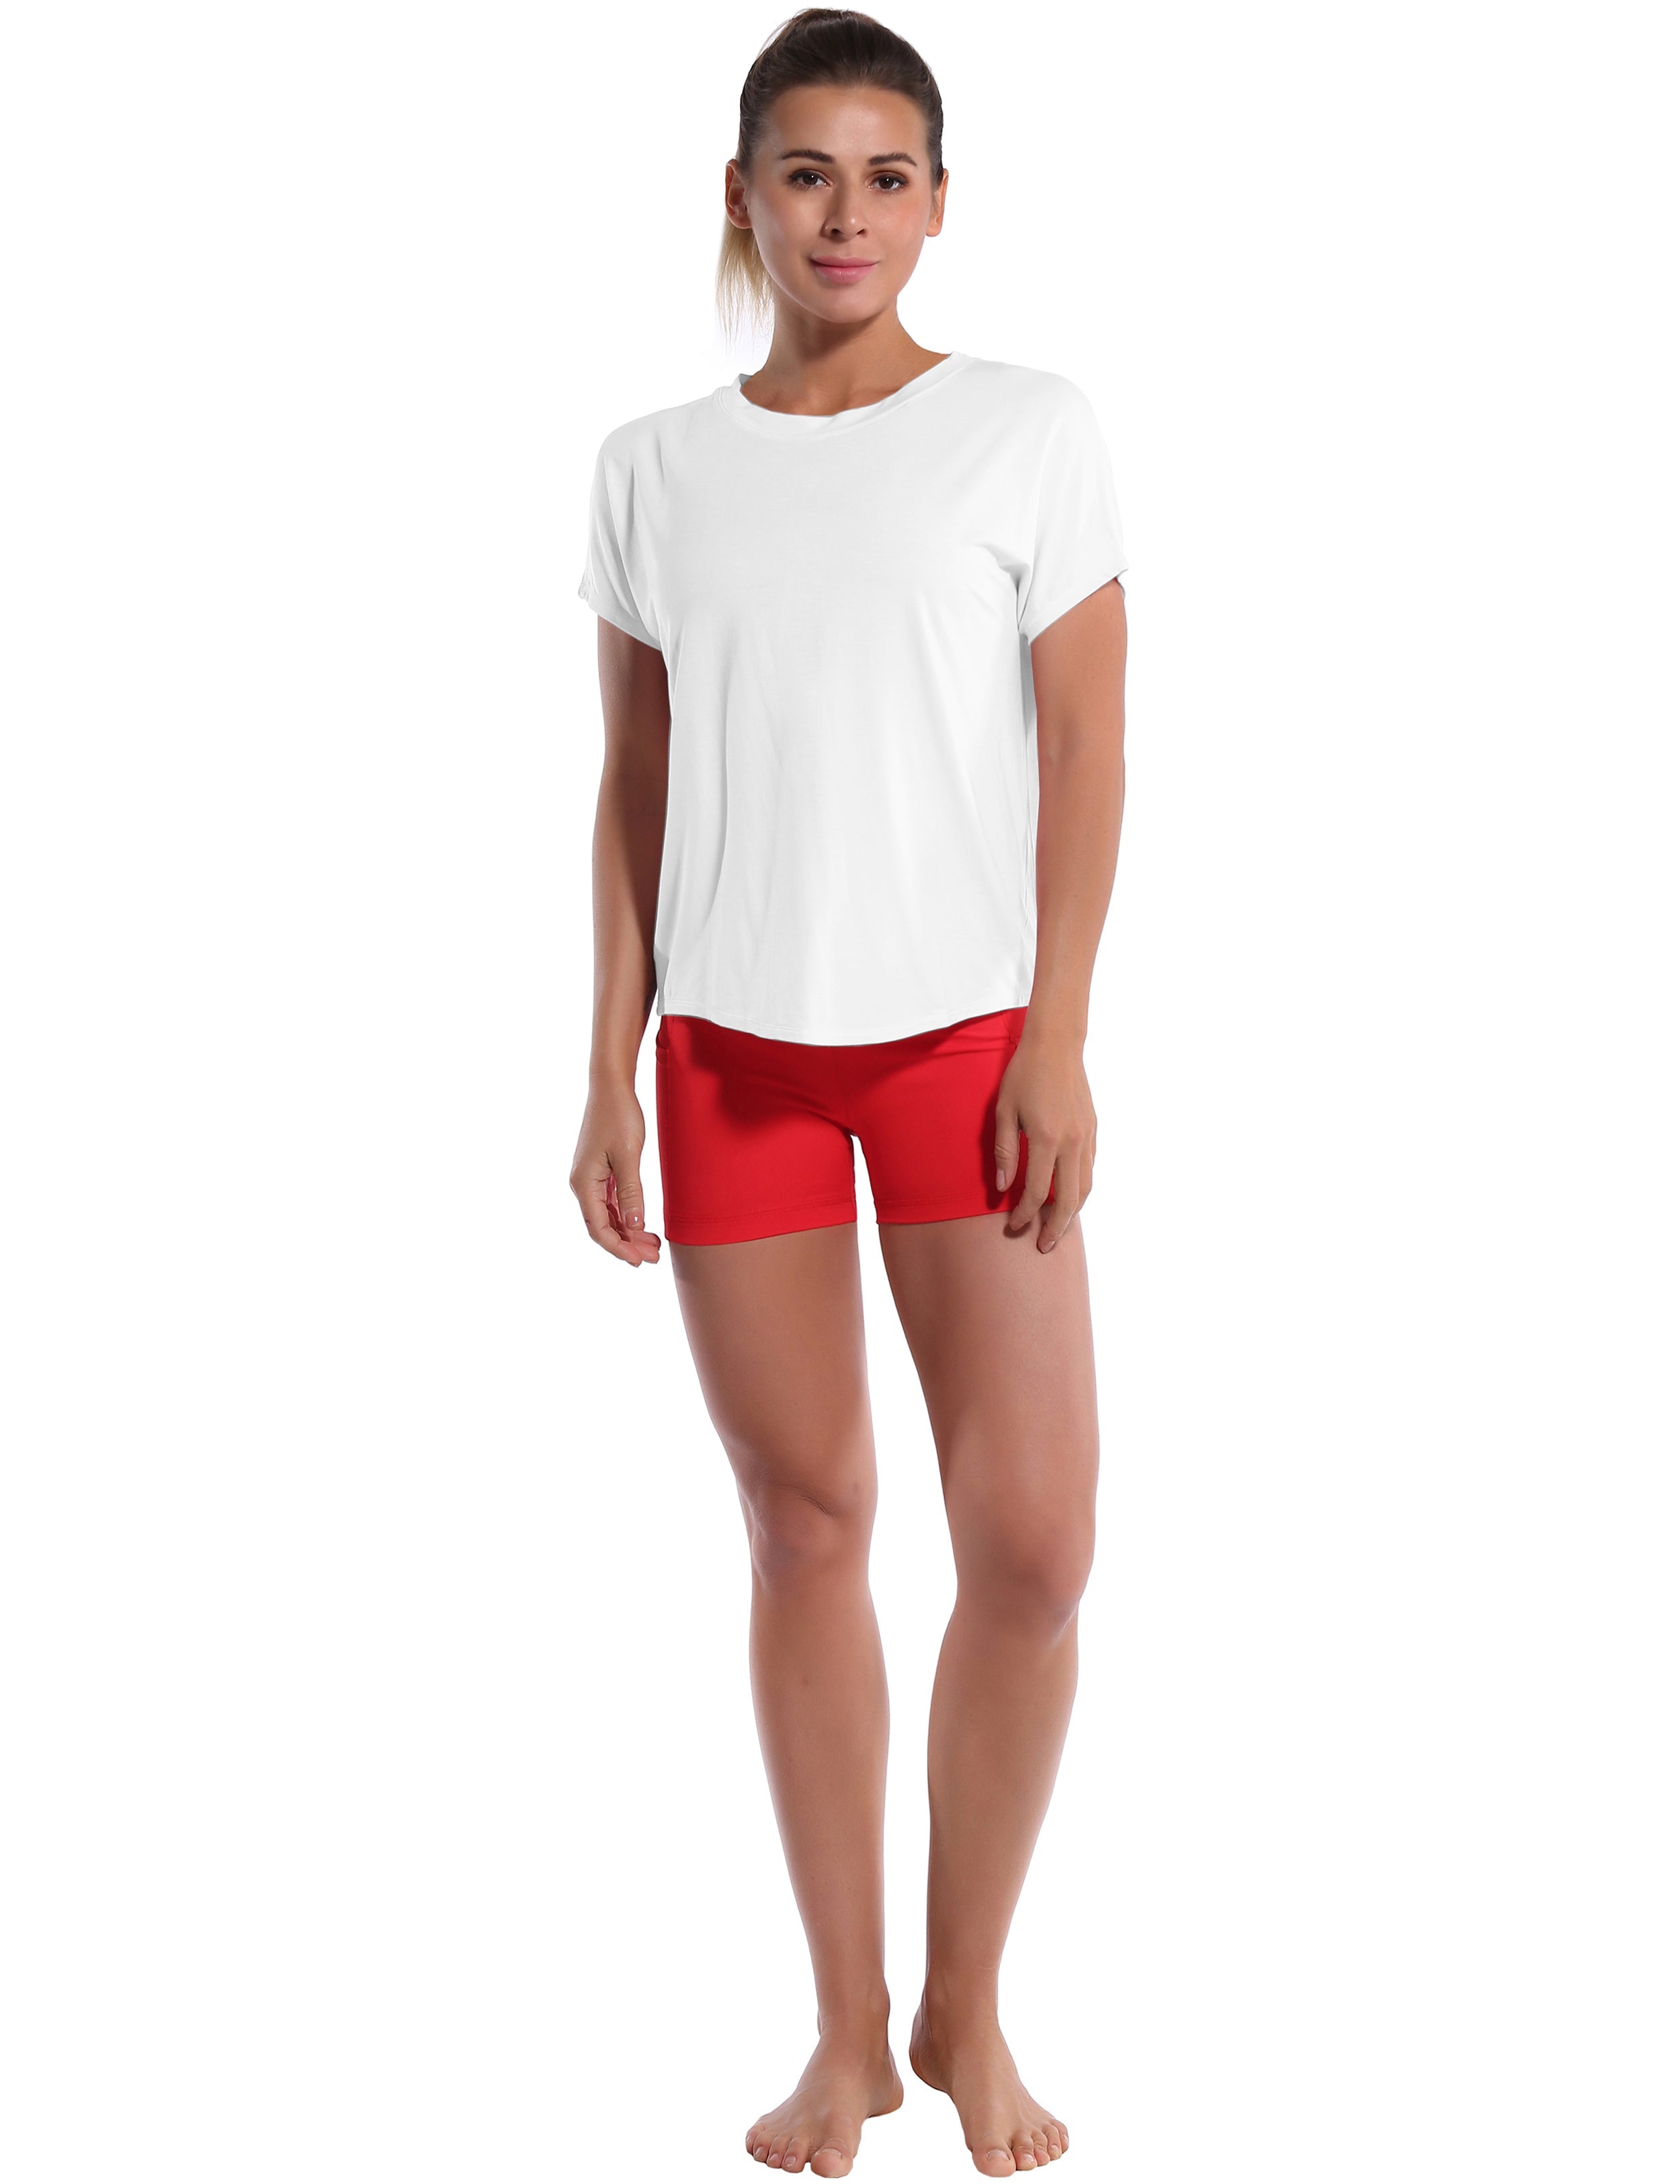 Hip Length Short Sleeve Shirt white_Pilates